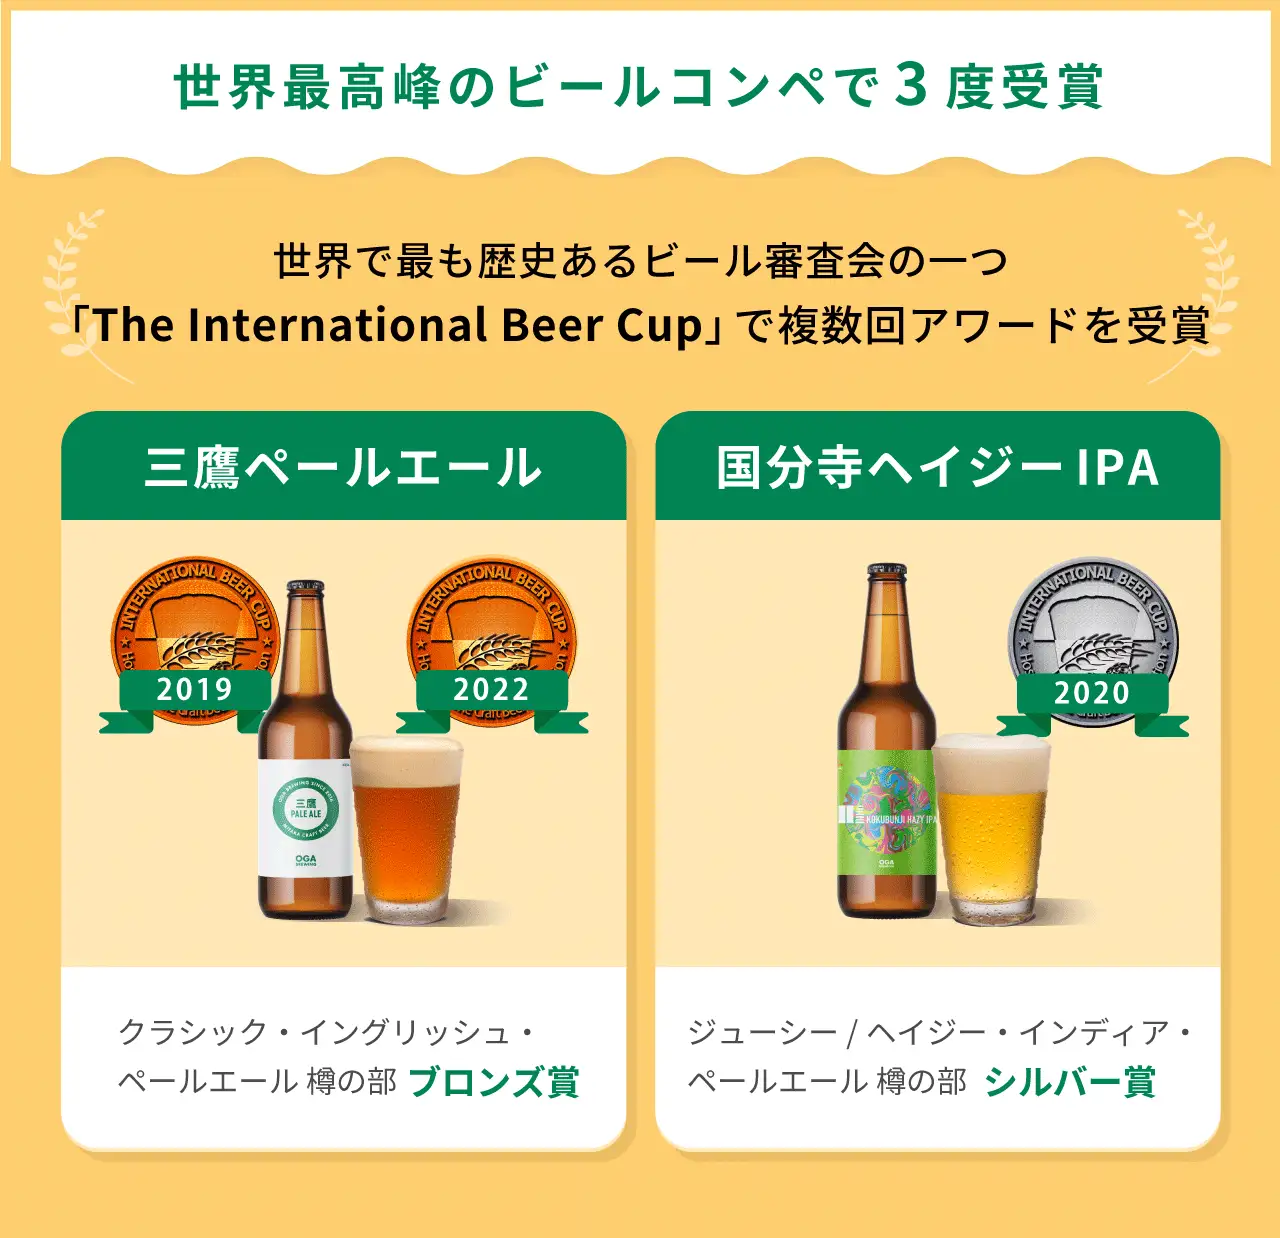 多彩なレシピ開発に挑む東京・三鷹発クラフトビールベンチャー「OGA BREWING」、イークラウドを通じた資金調達を2月6日に開始